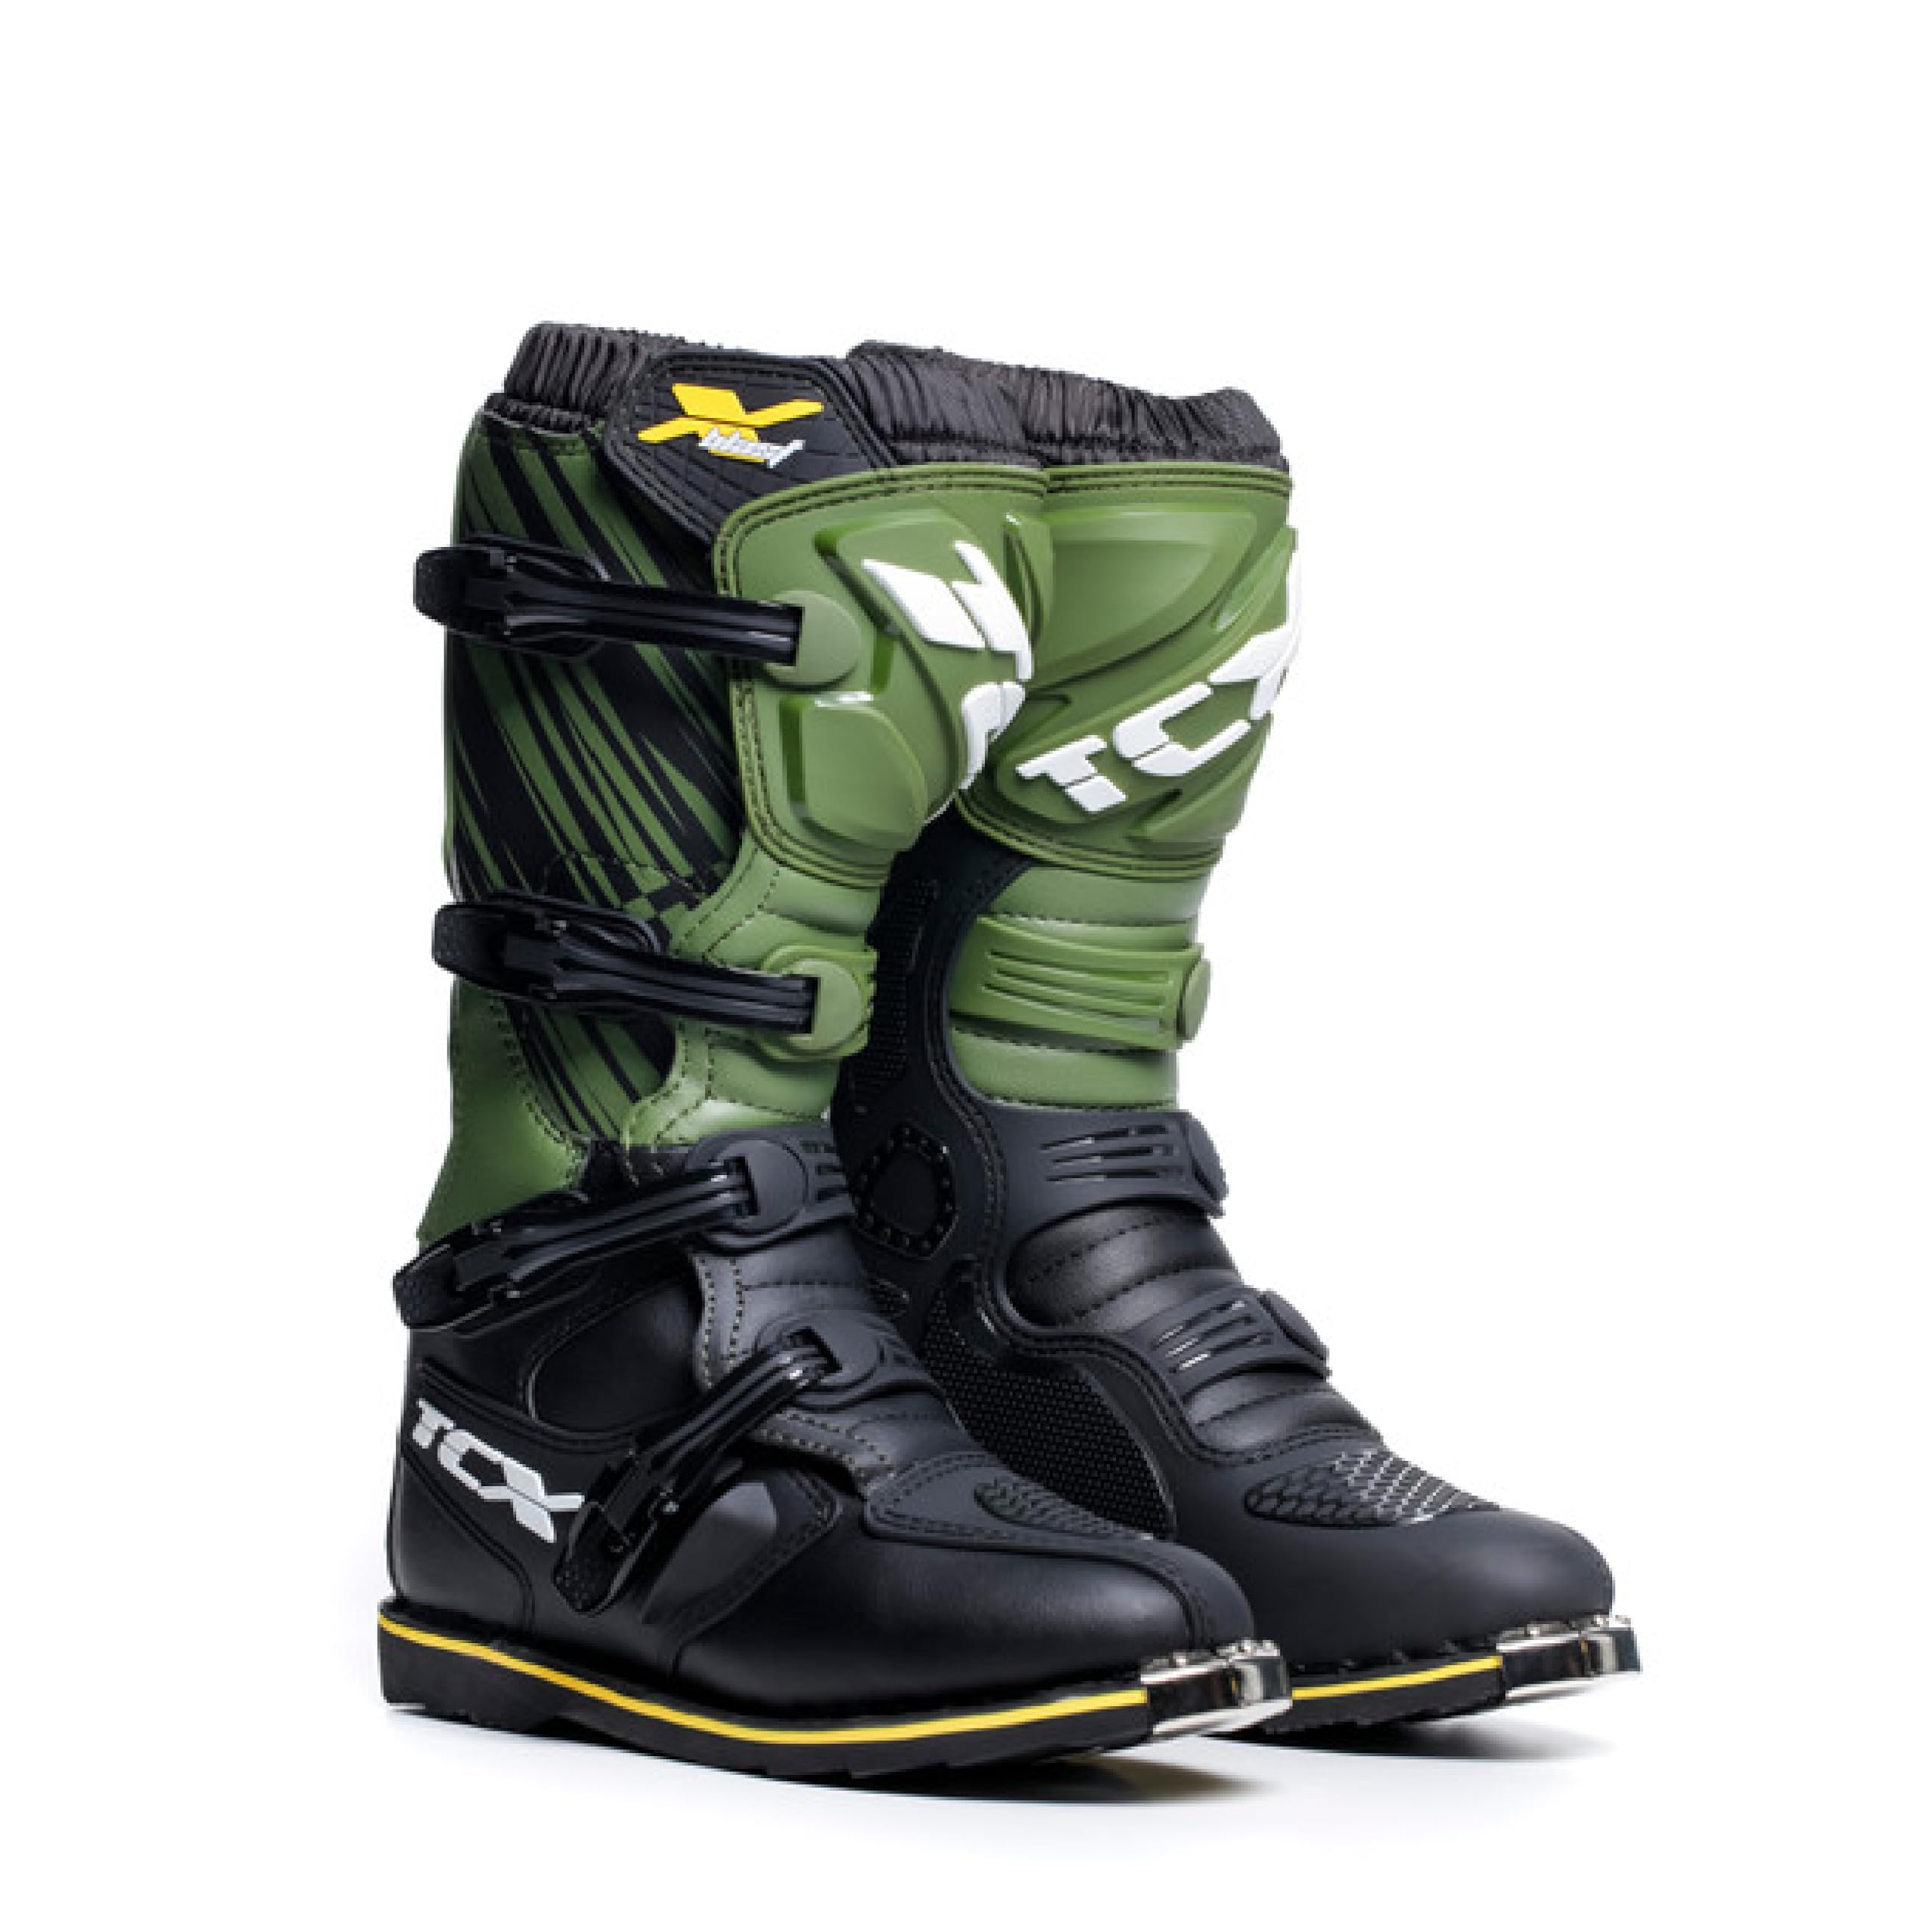 TCX - X-Blast, Herren Motocross-Stiefel, Enduro-Stiefel, Off-Road-Stiefel mit Mikrofaser-Obermaterial und Goodyear-Konstruktionssohle, Schwarz/grün/gelb